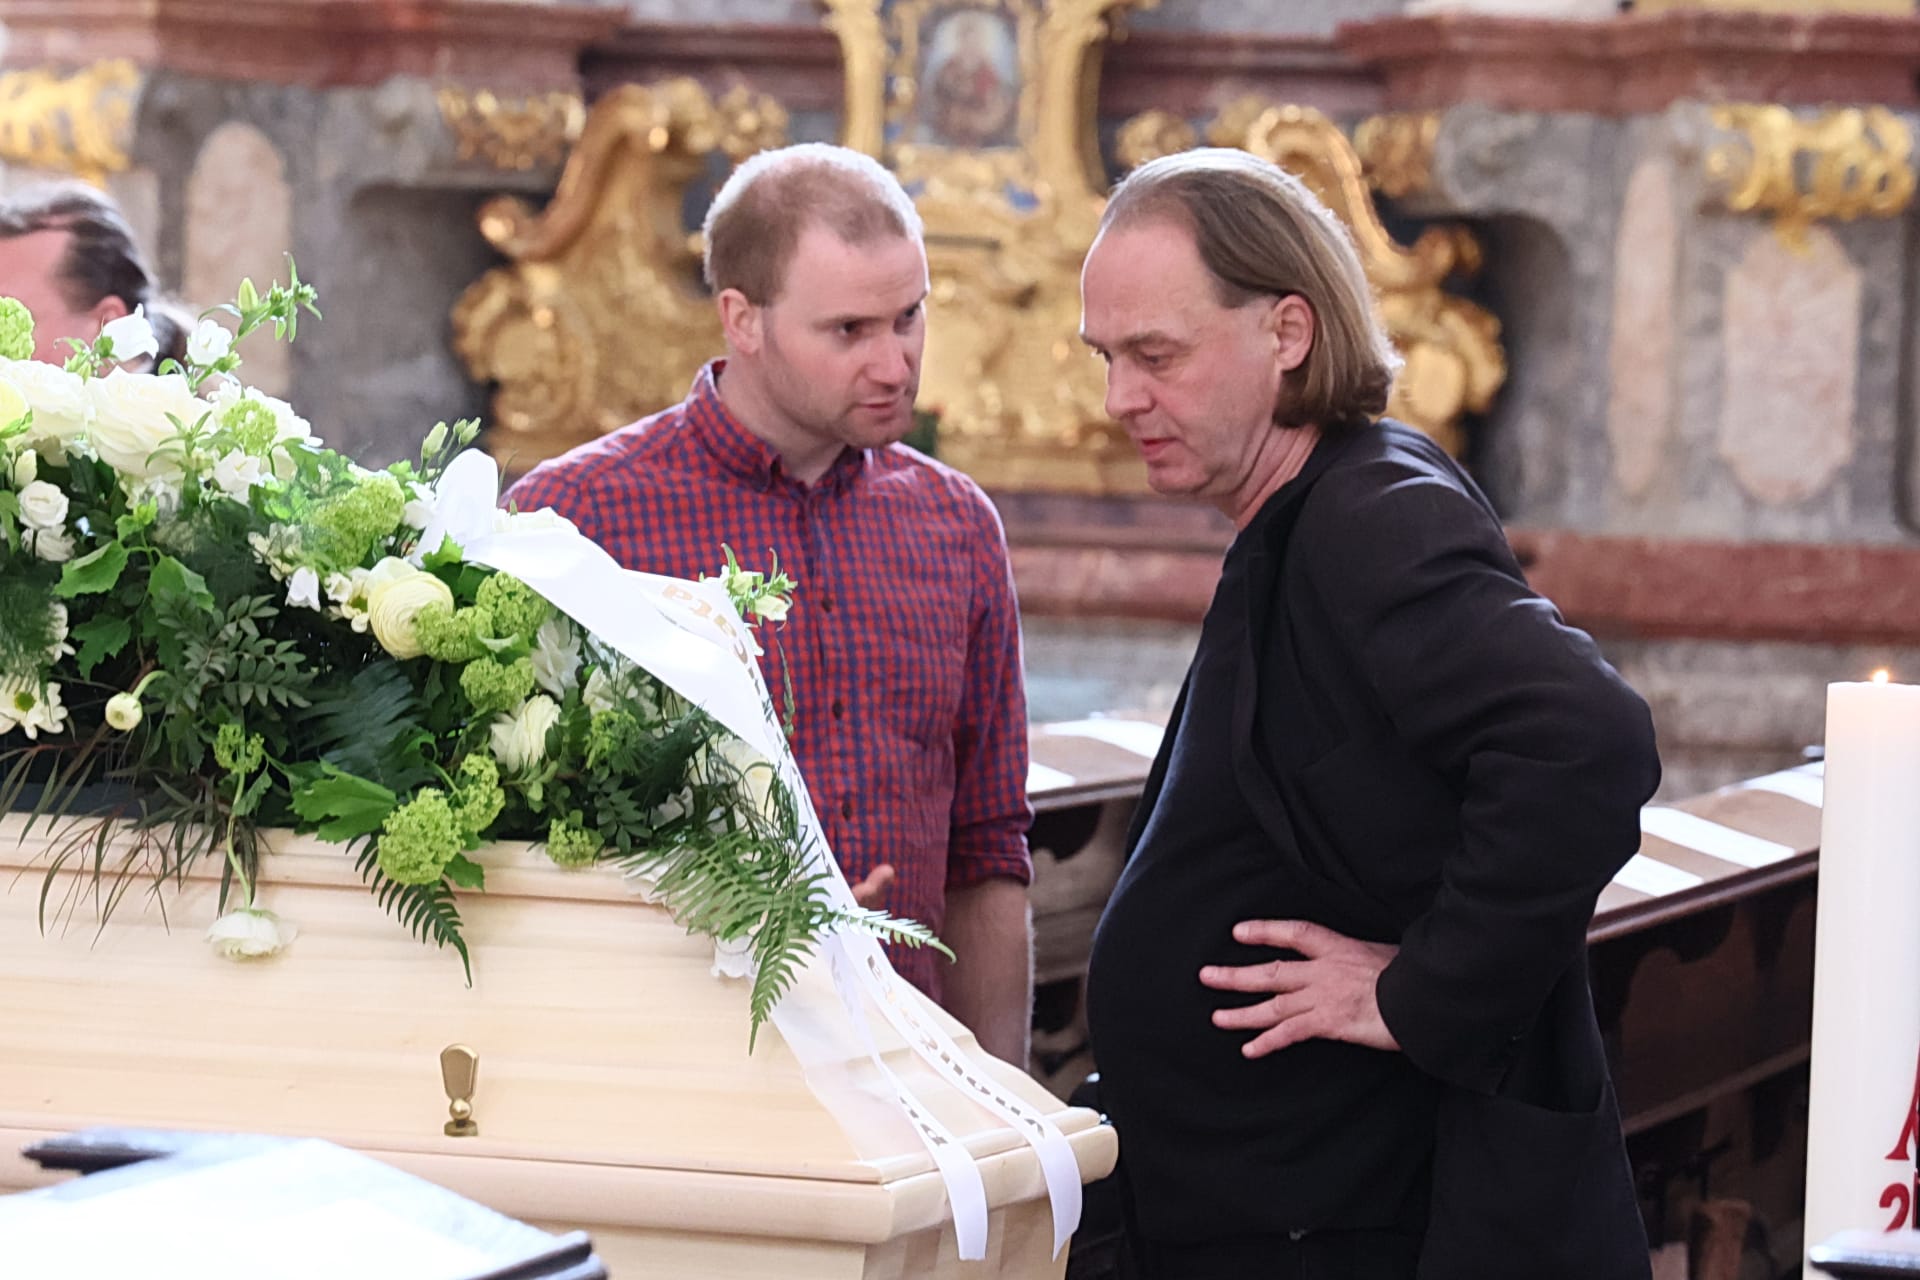 V sobotu 22. dubna se v kostele sv. Ignáce na Karlově náměstí v Praze konal pohřeb Dany Němcové, psycholožky a jedné z prvních signatářek Charty 77.